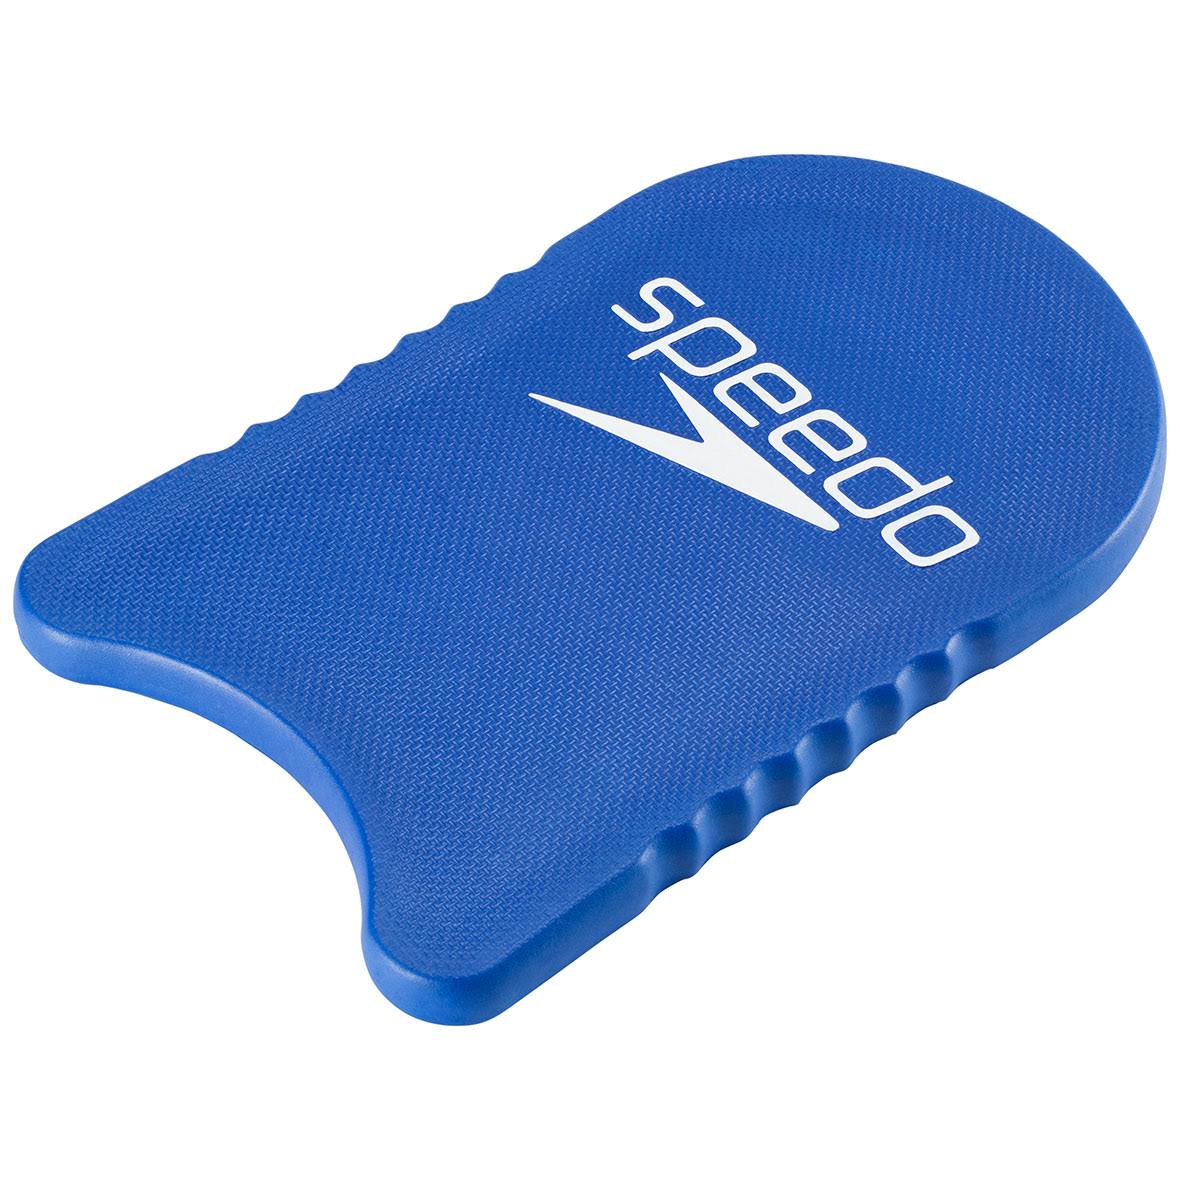 Speedo Team Kickboard - Blue